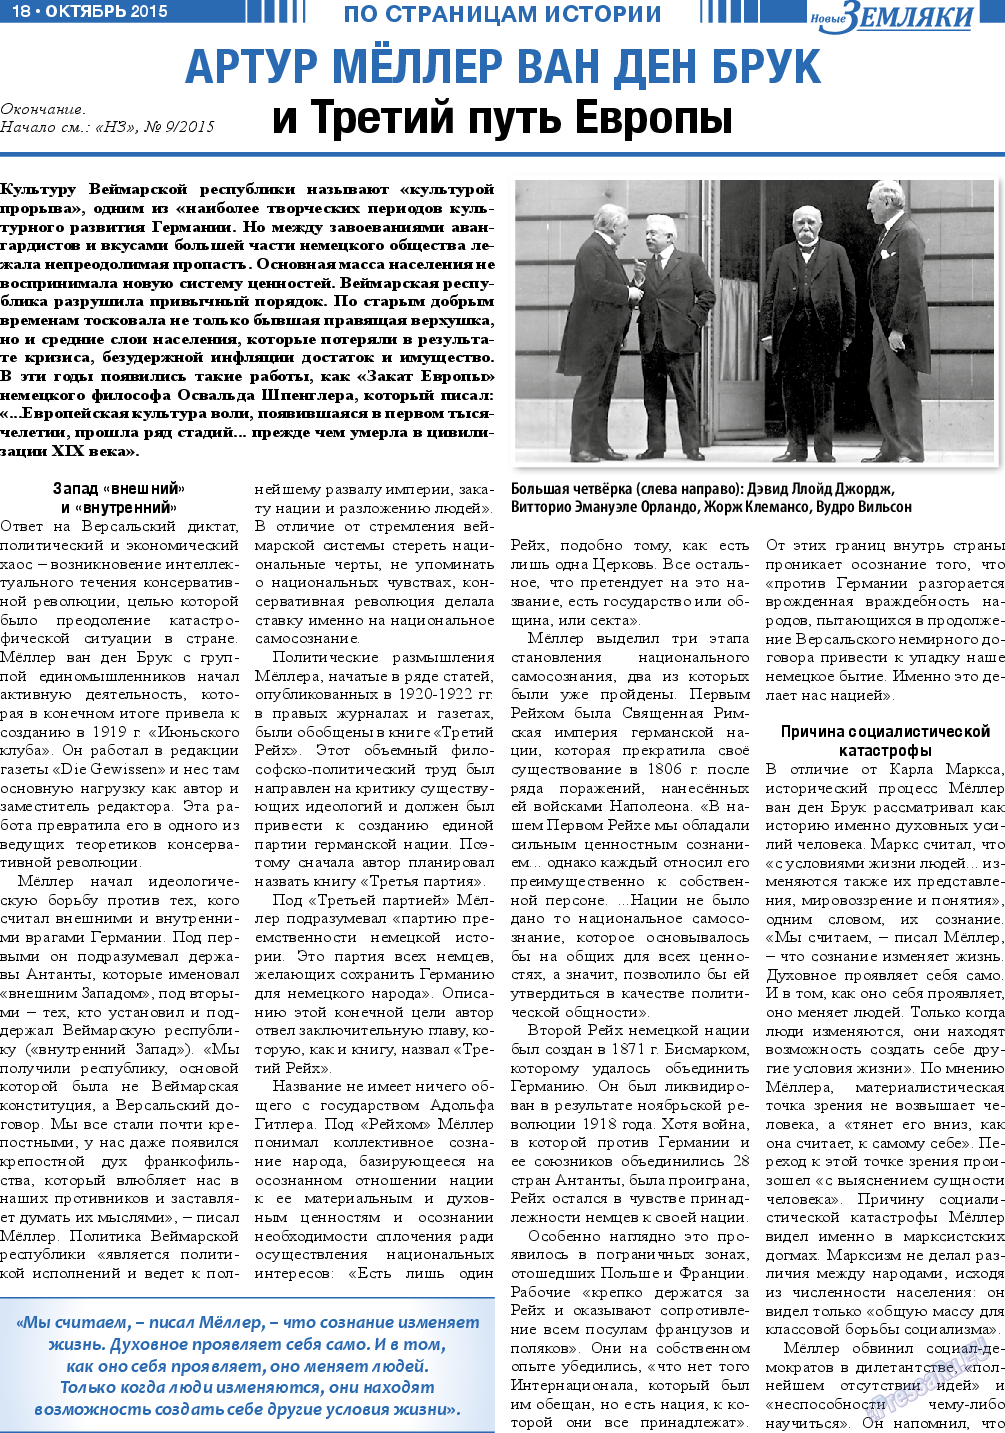 Новые Земляки, газета. 2015 №10 стр.18